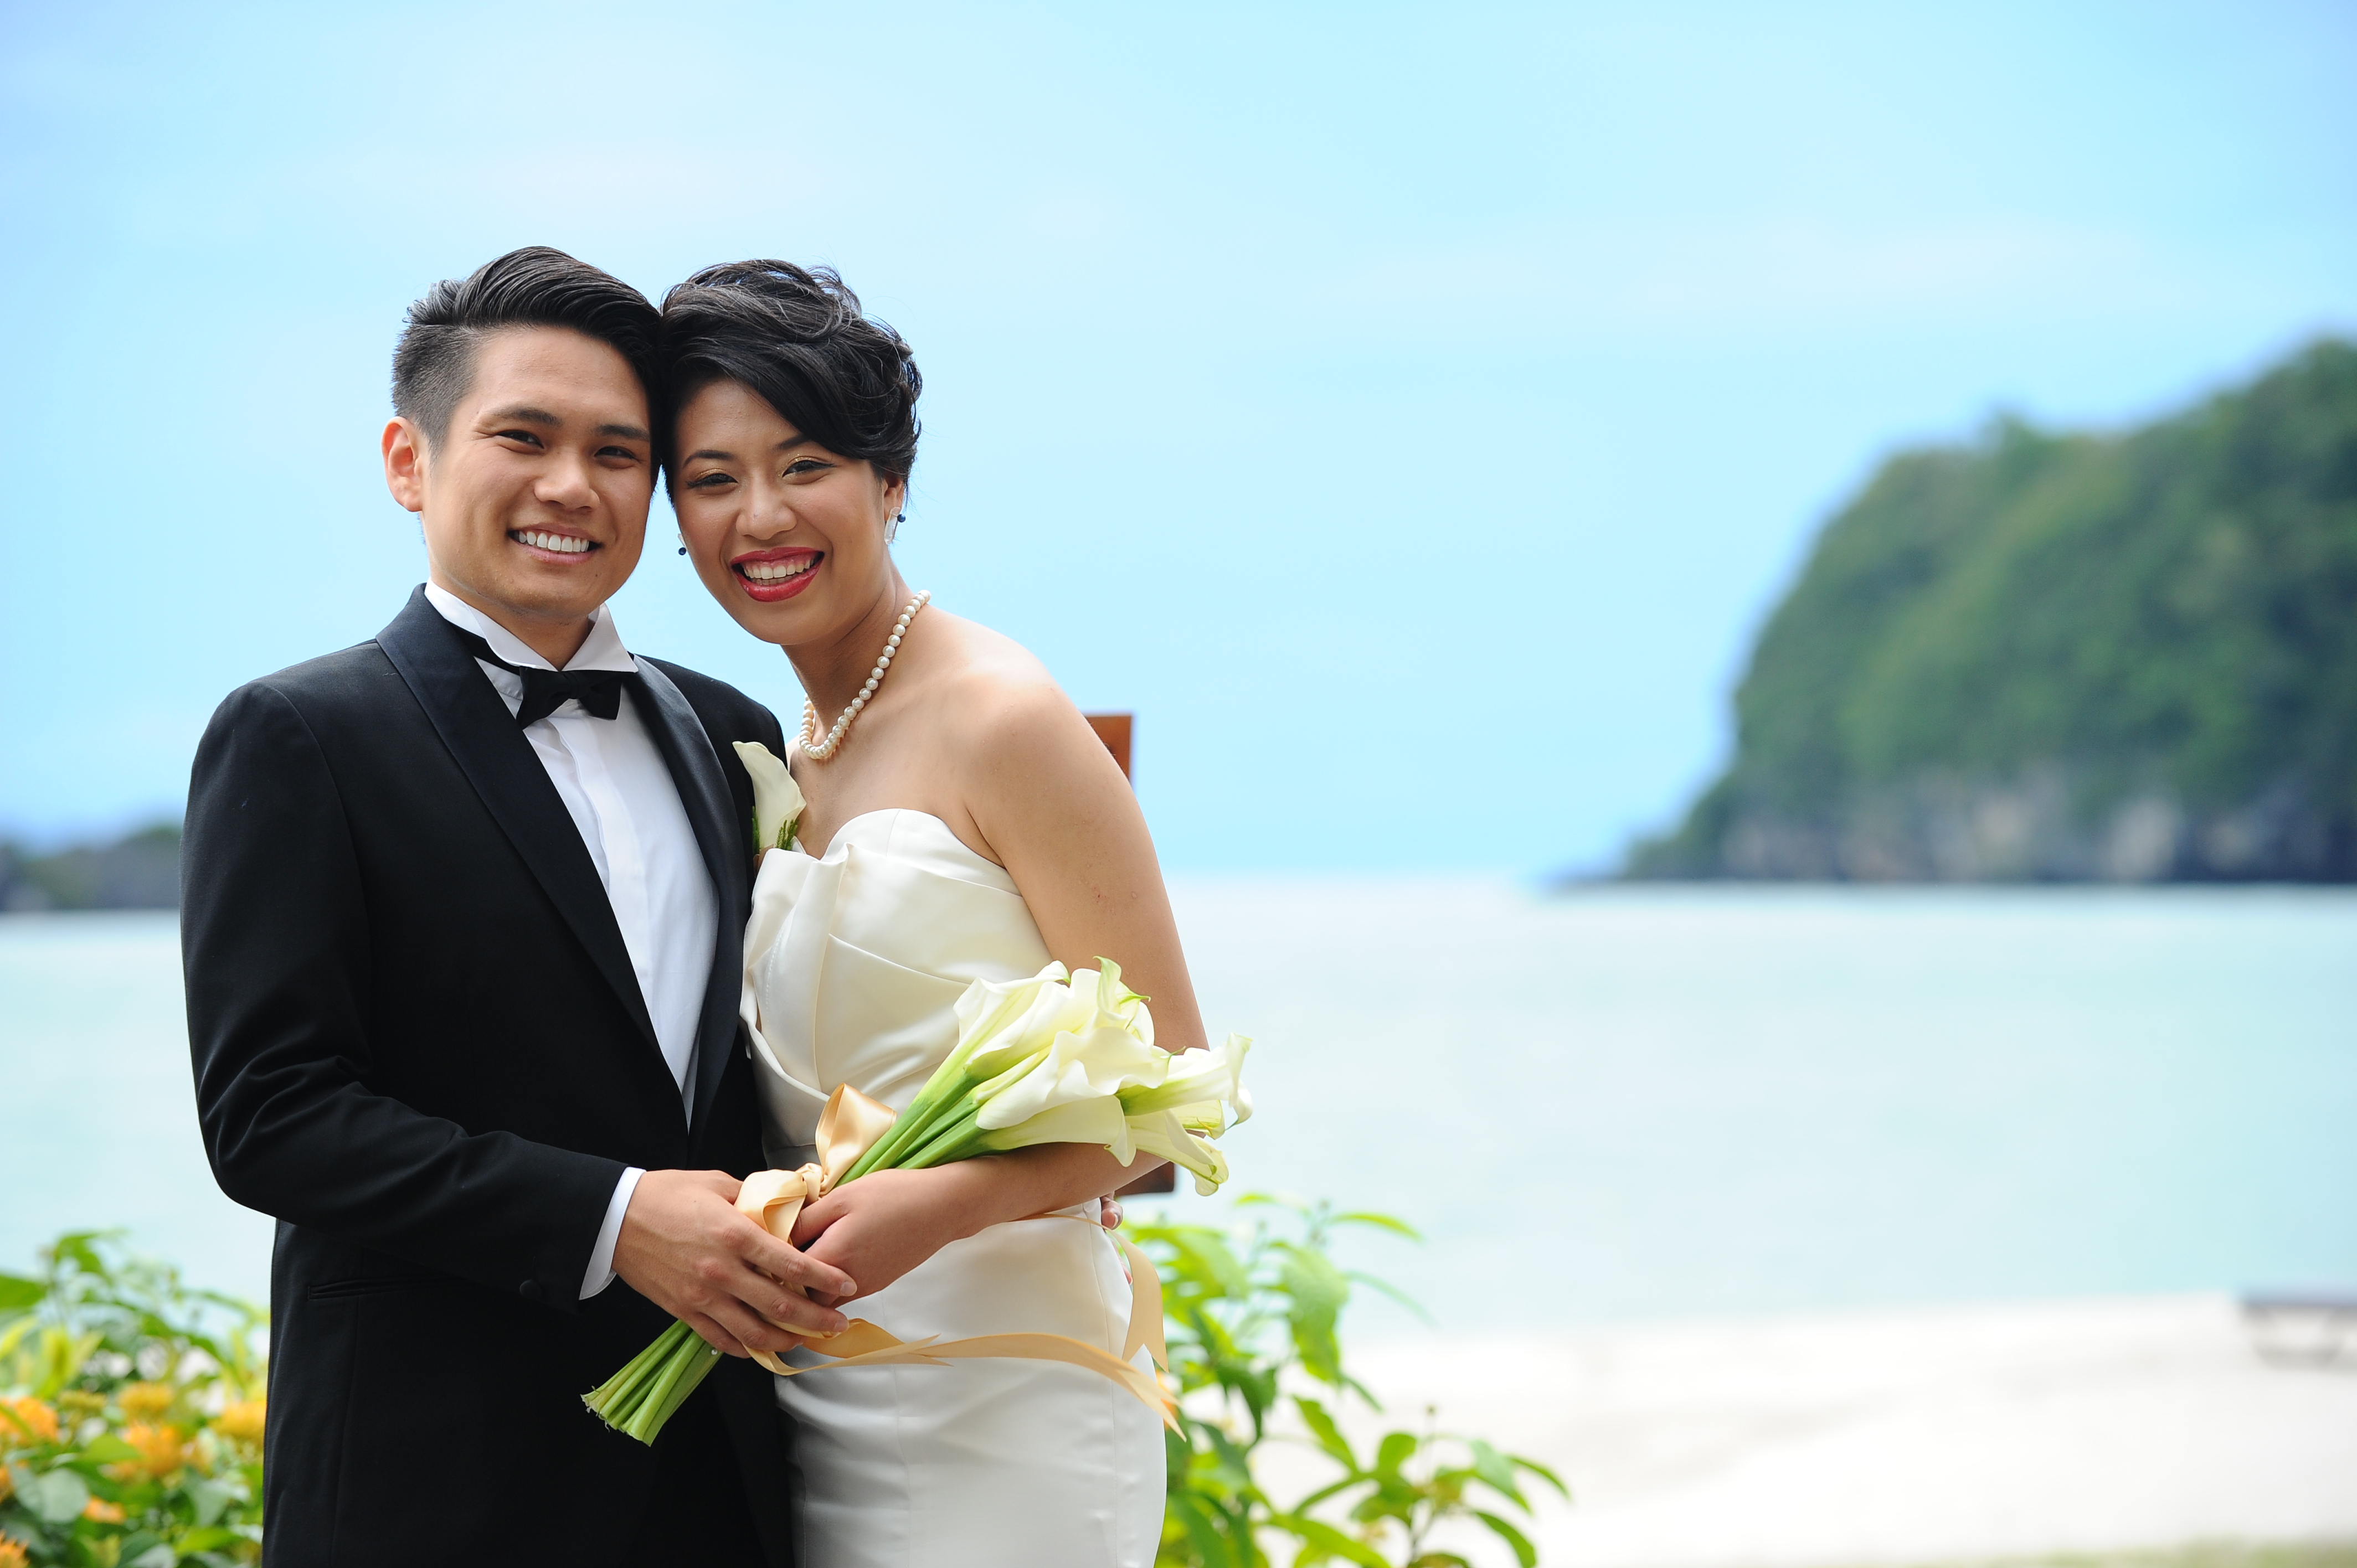 malaysia wedding beach wedding destination wedding beach asia resort